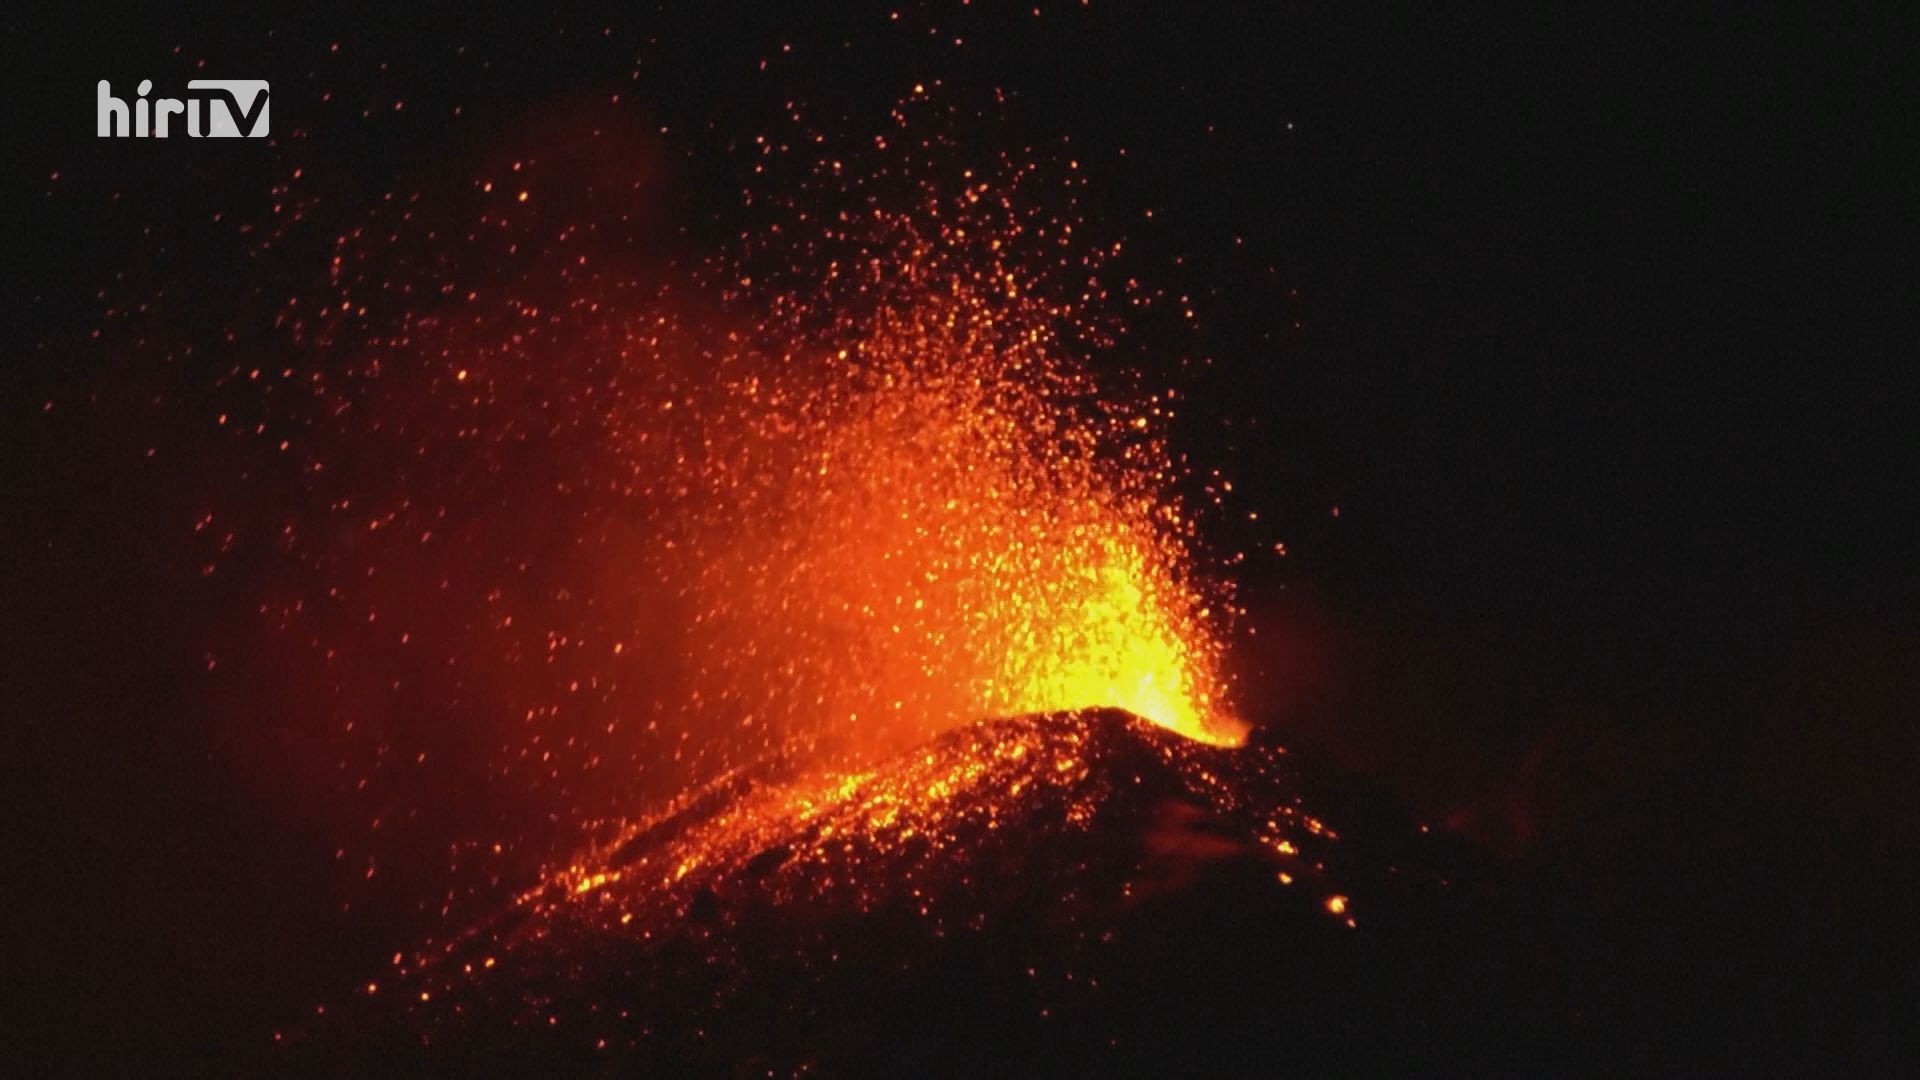 Kitört az Etna